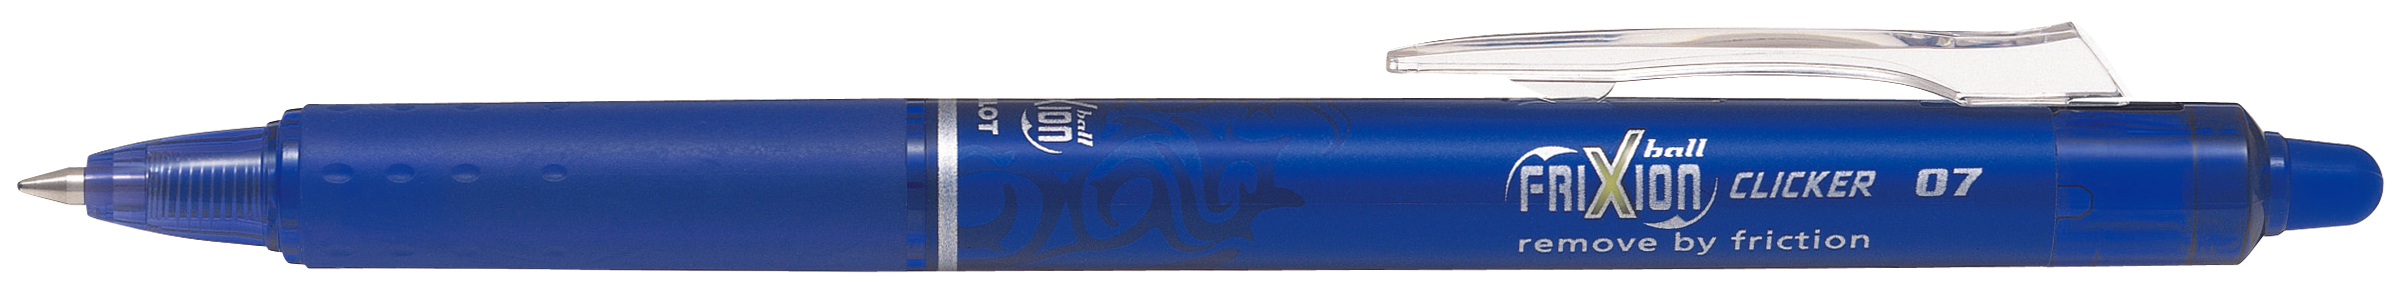 Penna Sfera a Scatto Frixionball Clicker 0 7mm Blu Pilot 6791 4902505417511